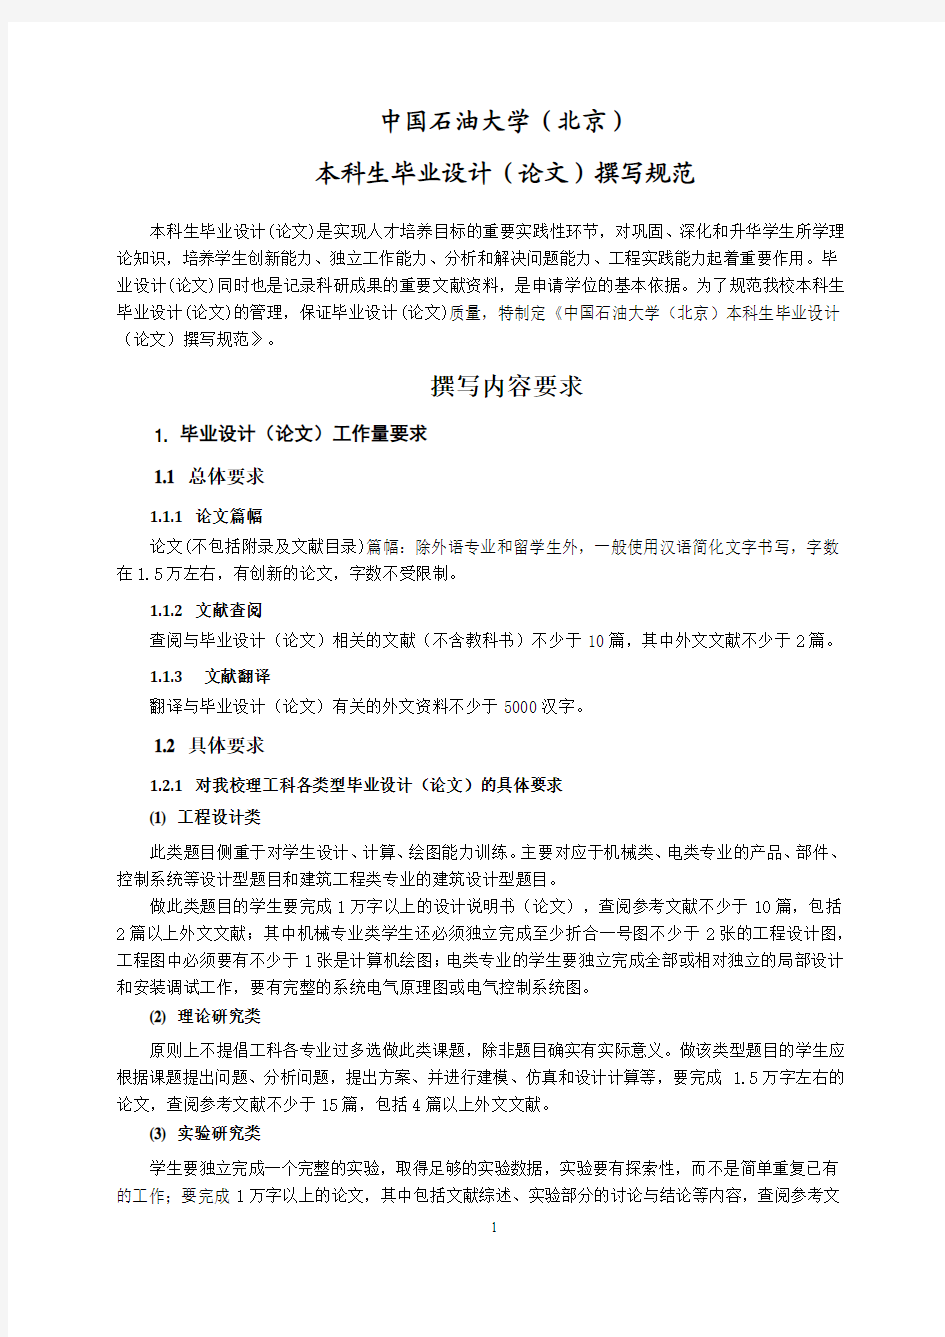 中国石油大学(北京)本科生毕业设计(论文)撰写规范